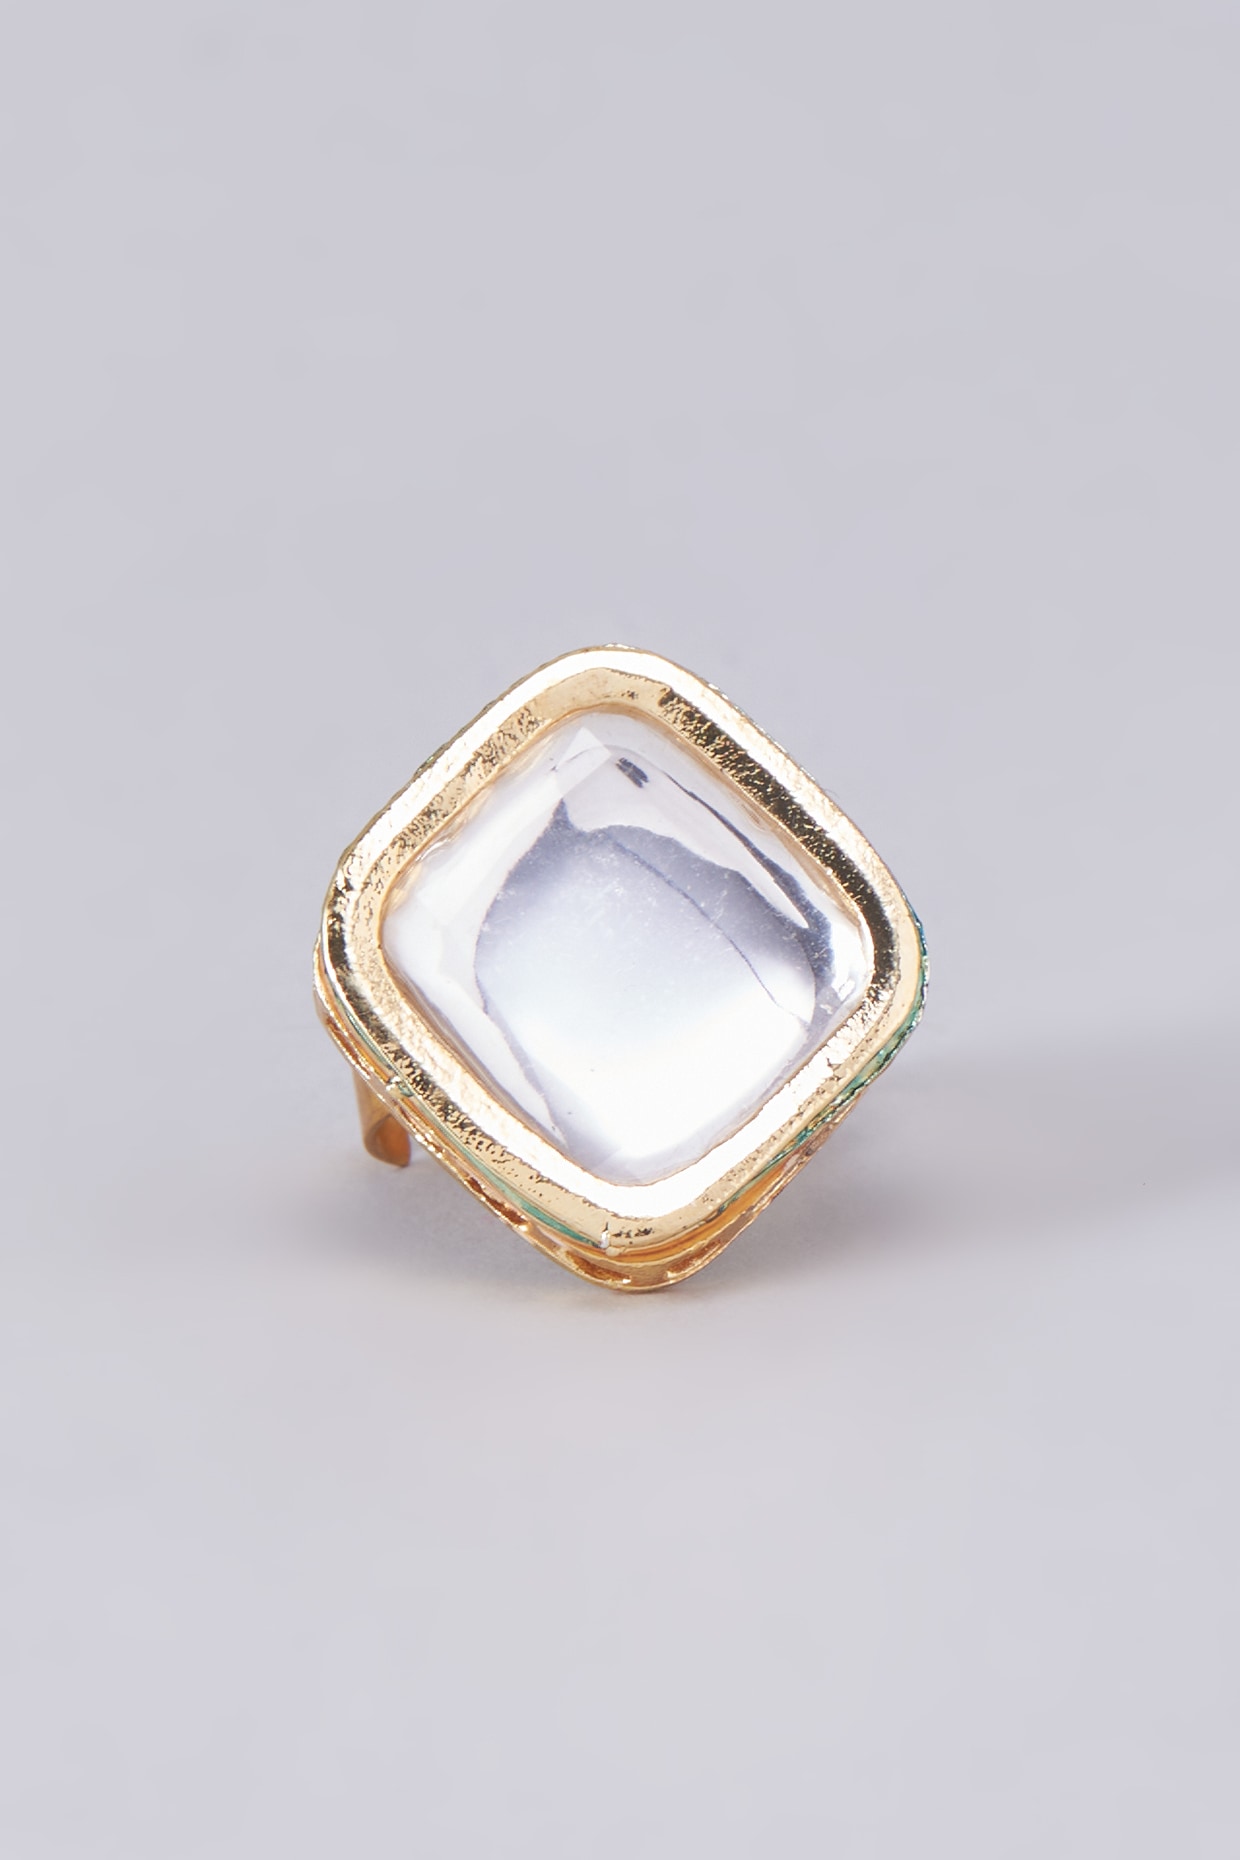 Gold Intaglio Seal Stone MOP Ring with Pegasus - Savati 296|CultureTaste